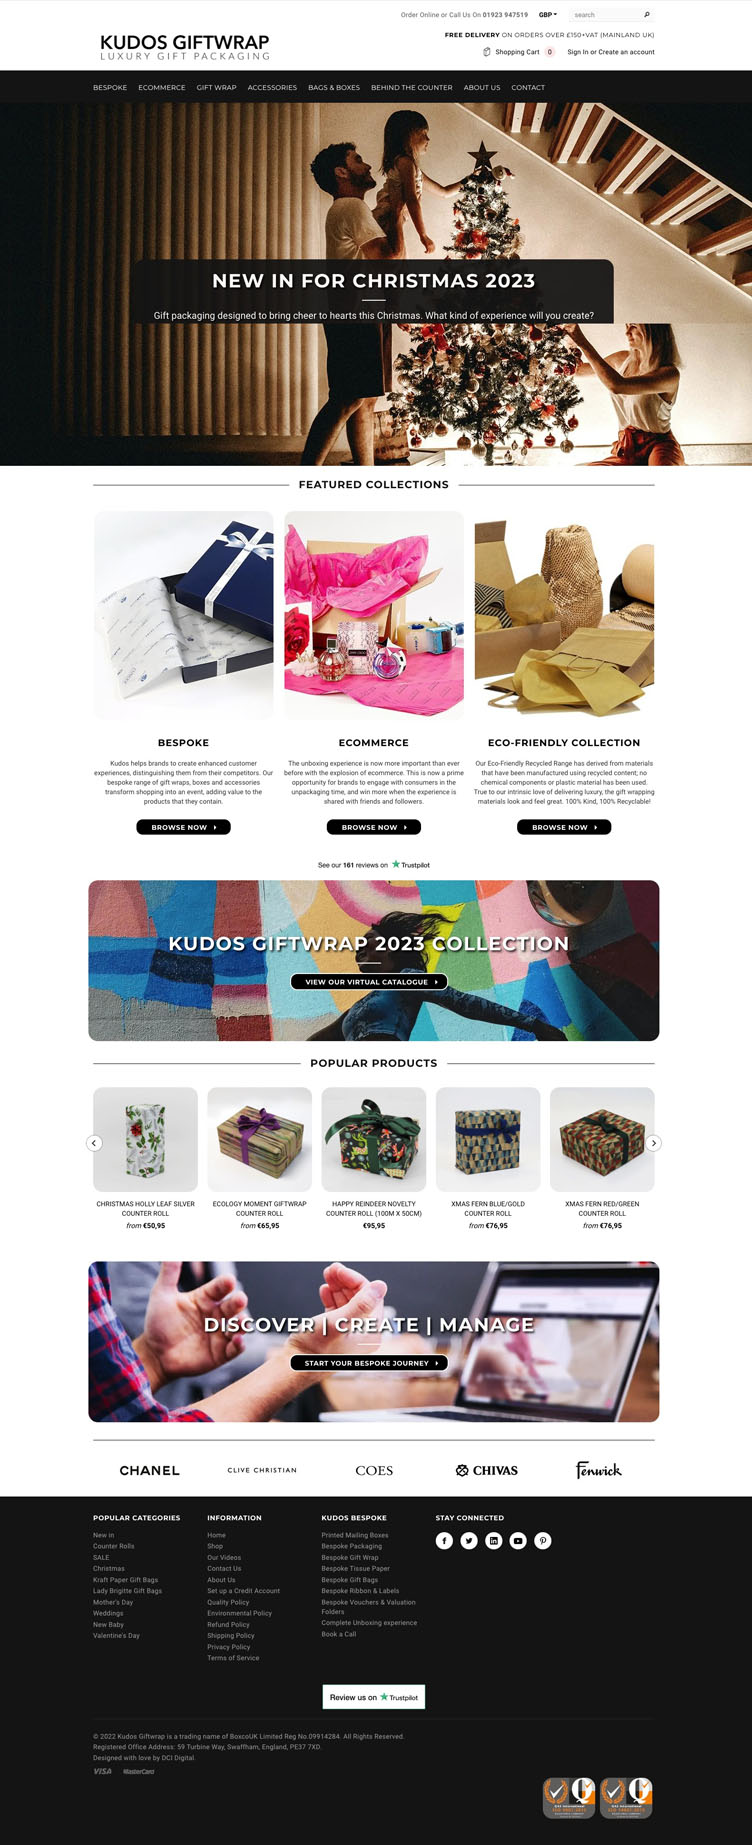 A full mock of an e-commerce website designed for Kudos Giftwrap